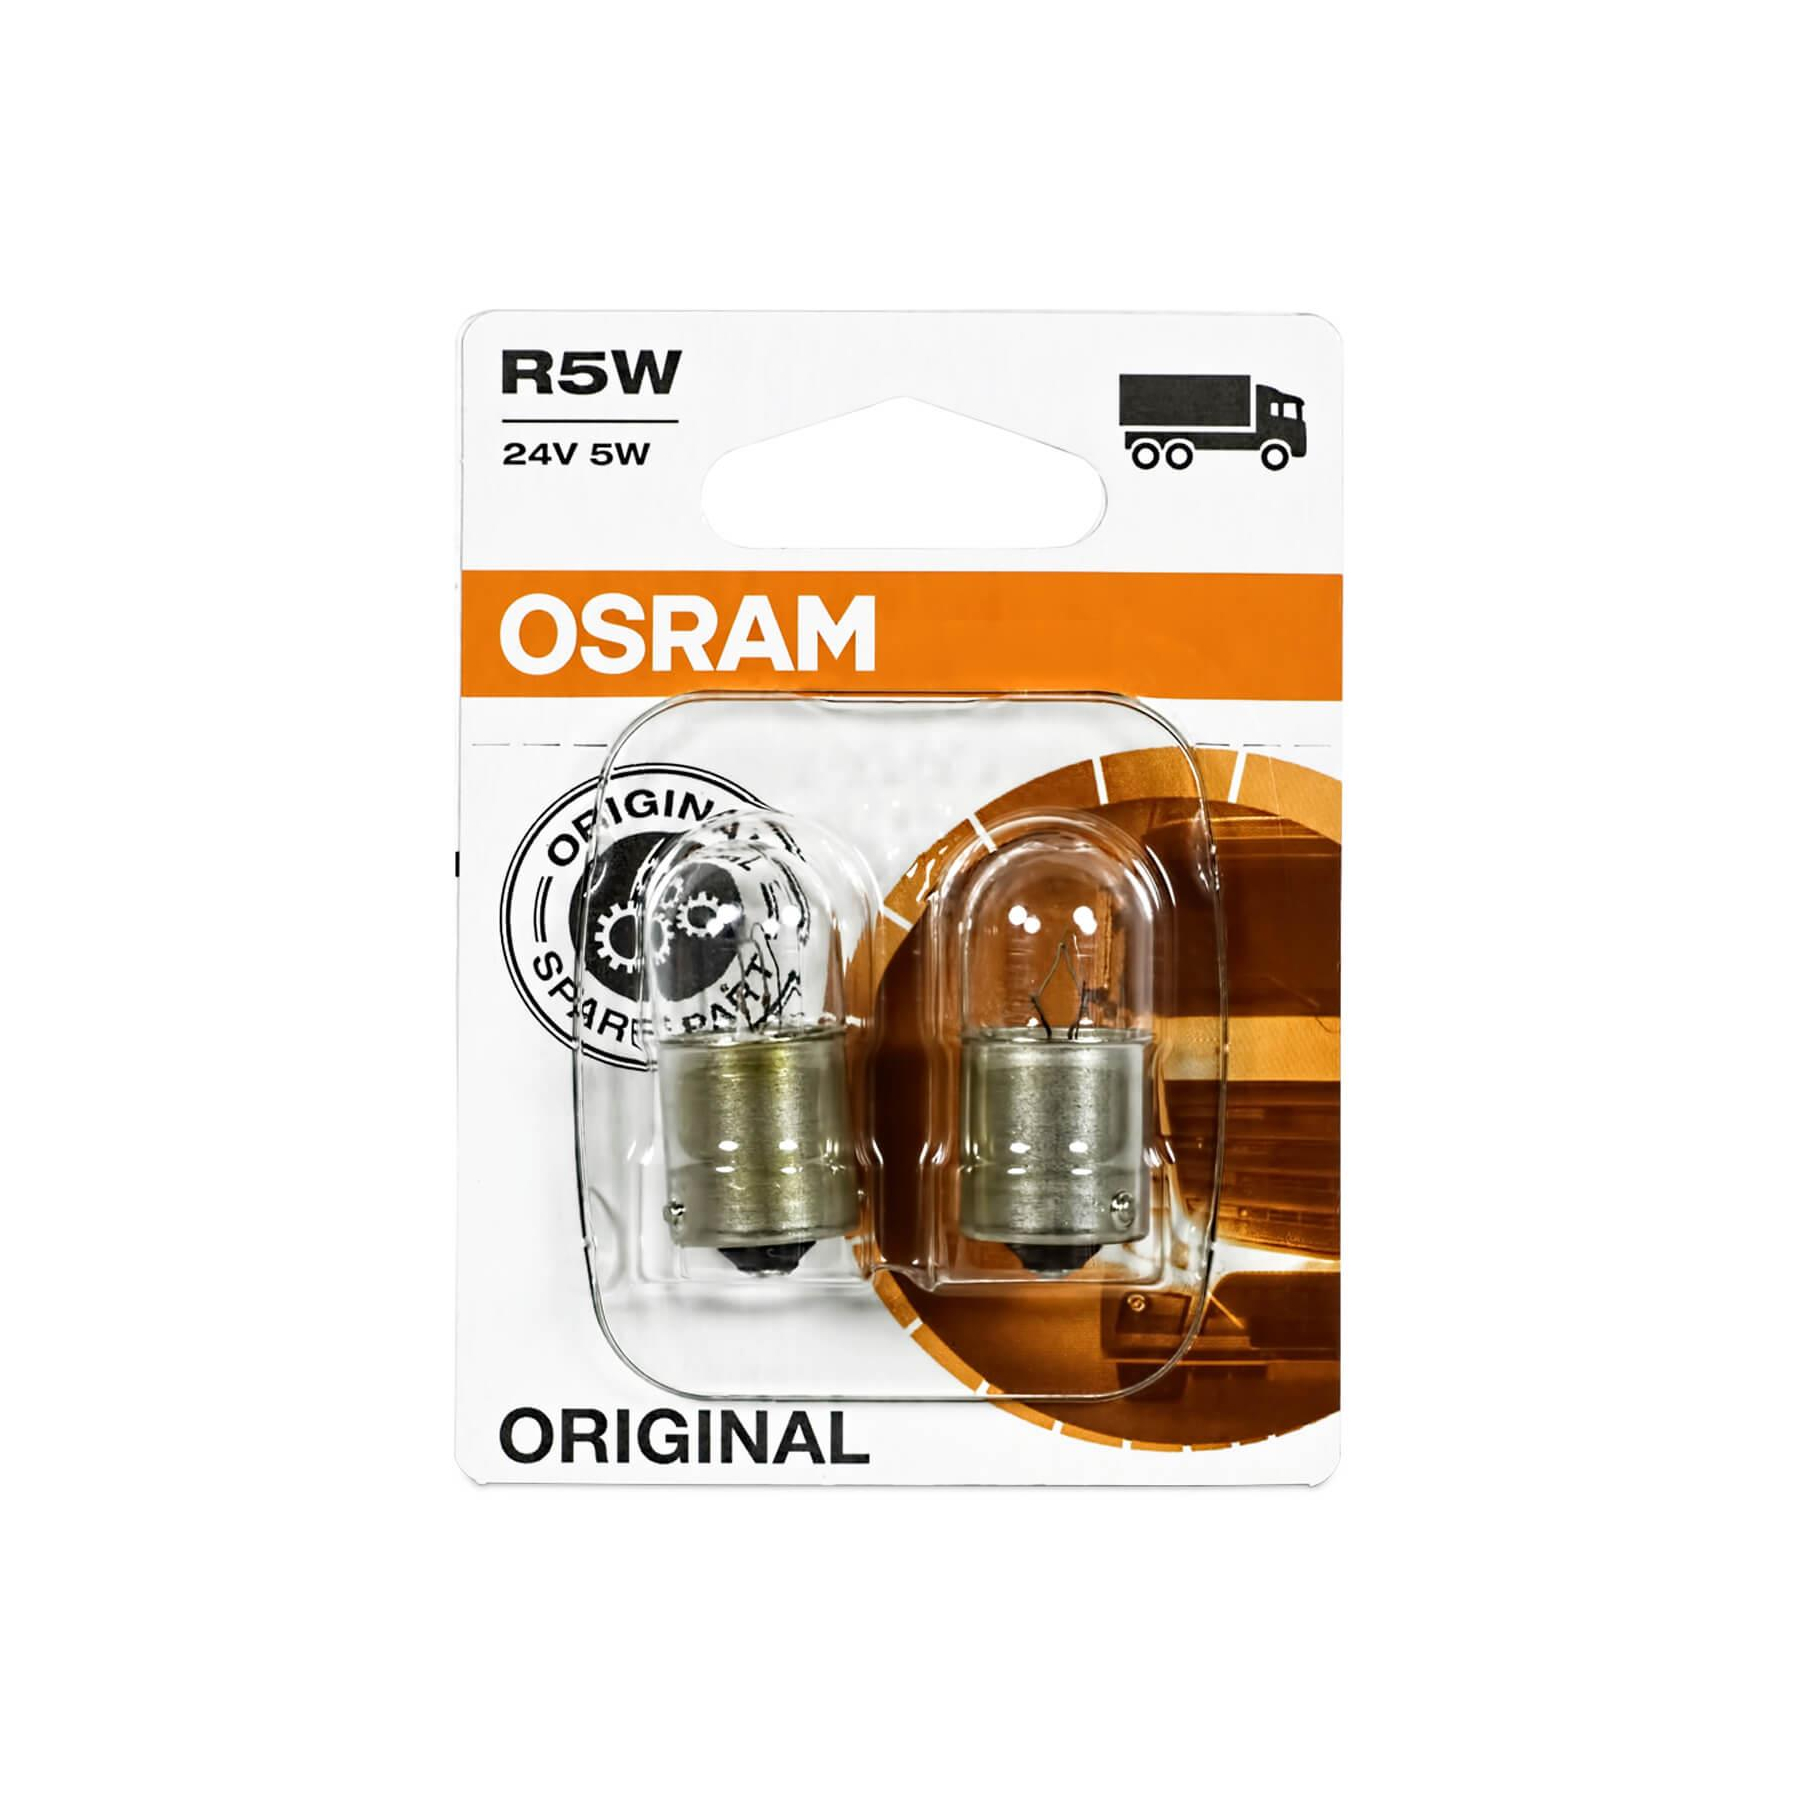 Osram Signallampe für Motorrad R5W 12V 5W kaufen